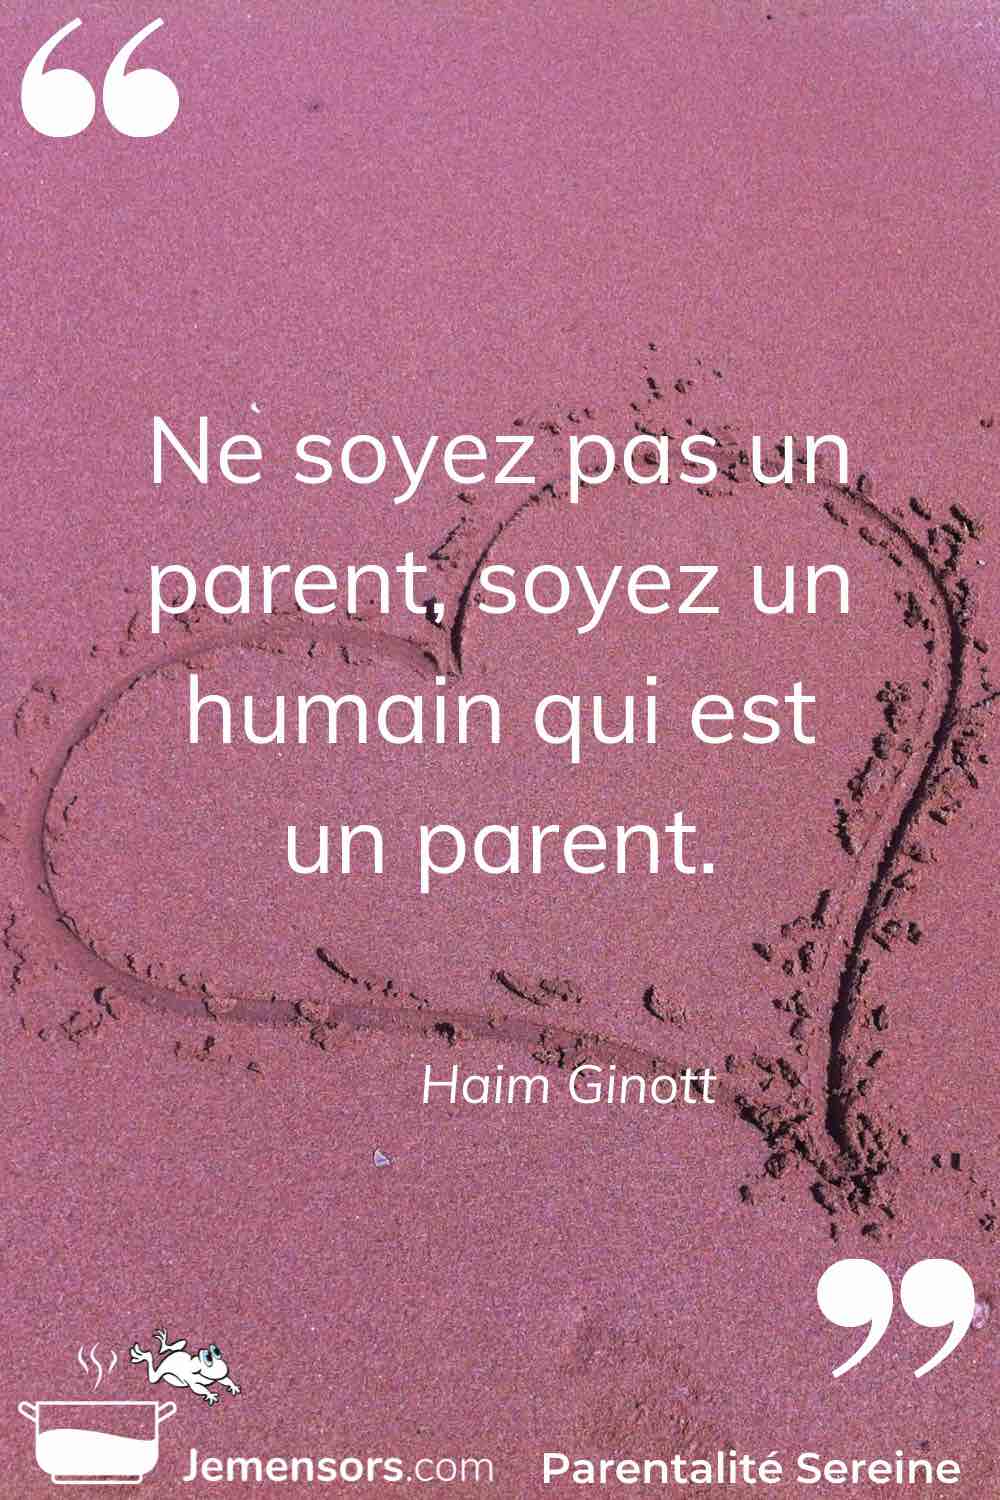 “Ne soyez pas un parent, soyez un humain qui est un parent.” Haim Ginott